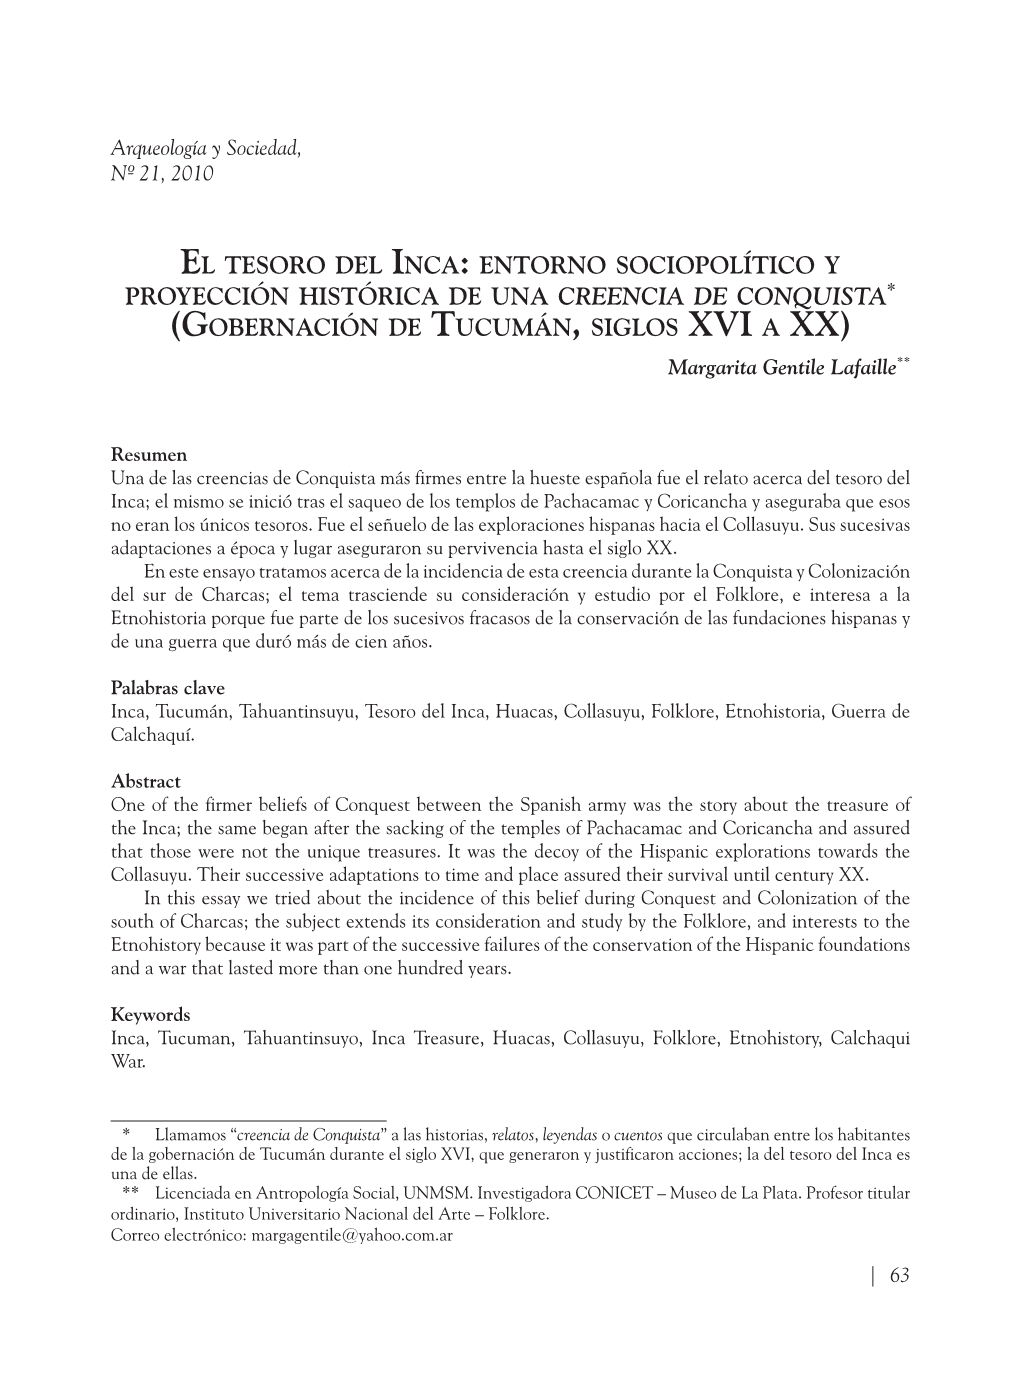 El Tesoro Del Inca: Entorno Sociopolítico Y Proyección Histórica